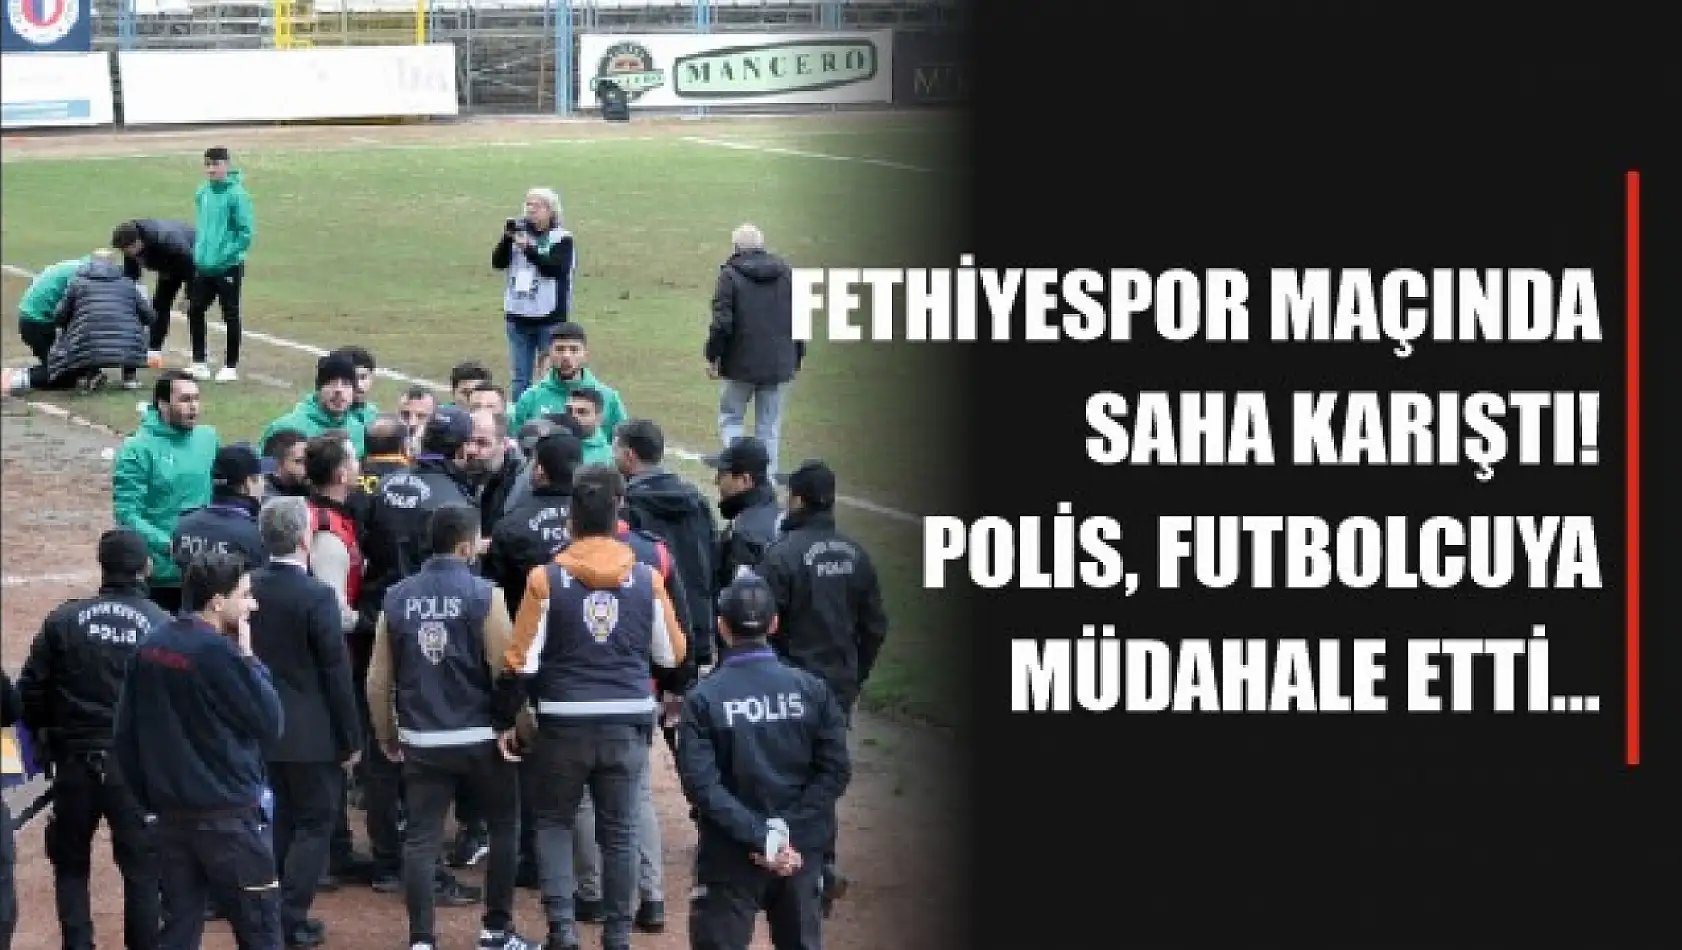 Fethiyespor maçında saha karıştı! Polis futbolcuya müdahale etti...